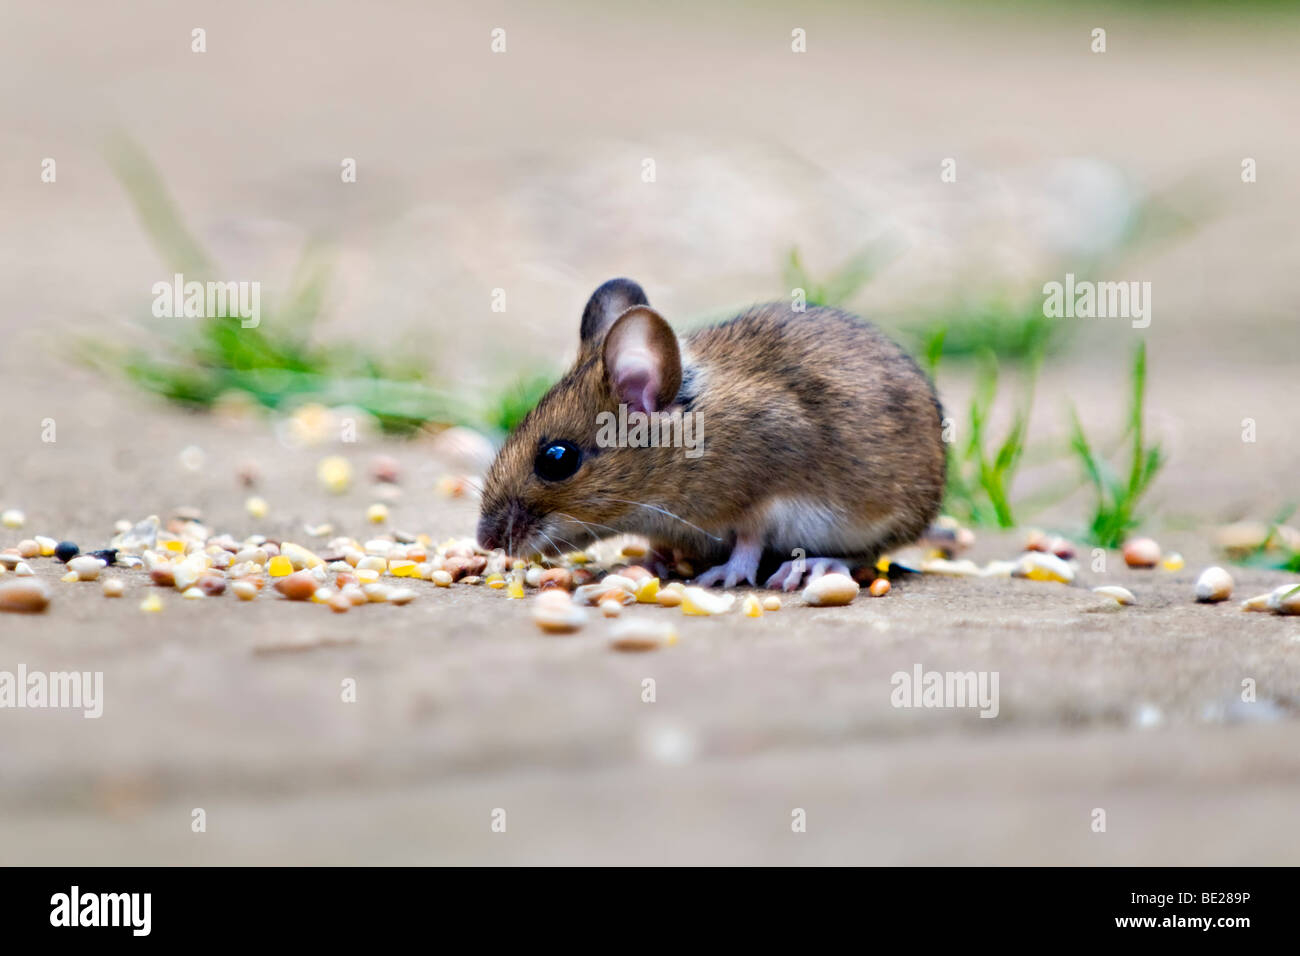 Waldmaus, auch bekannt als Feld oder Long-tailed Maus Essen Vogelfutter auf Terrasse im Garten mit Fokus-Hintergrund Stockfoto